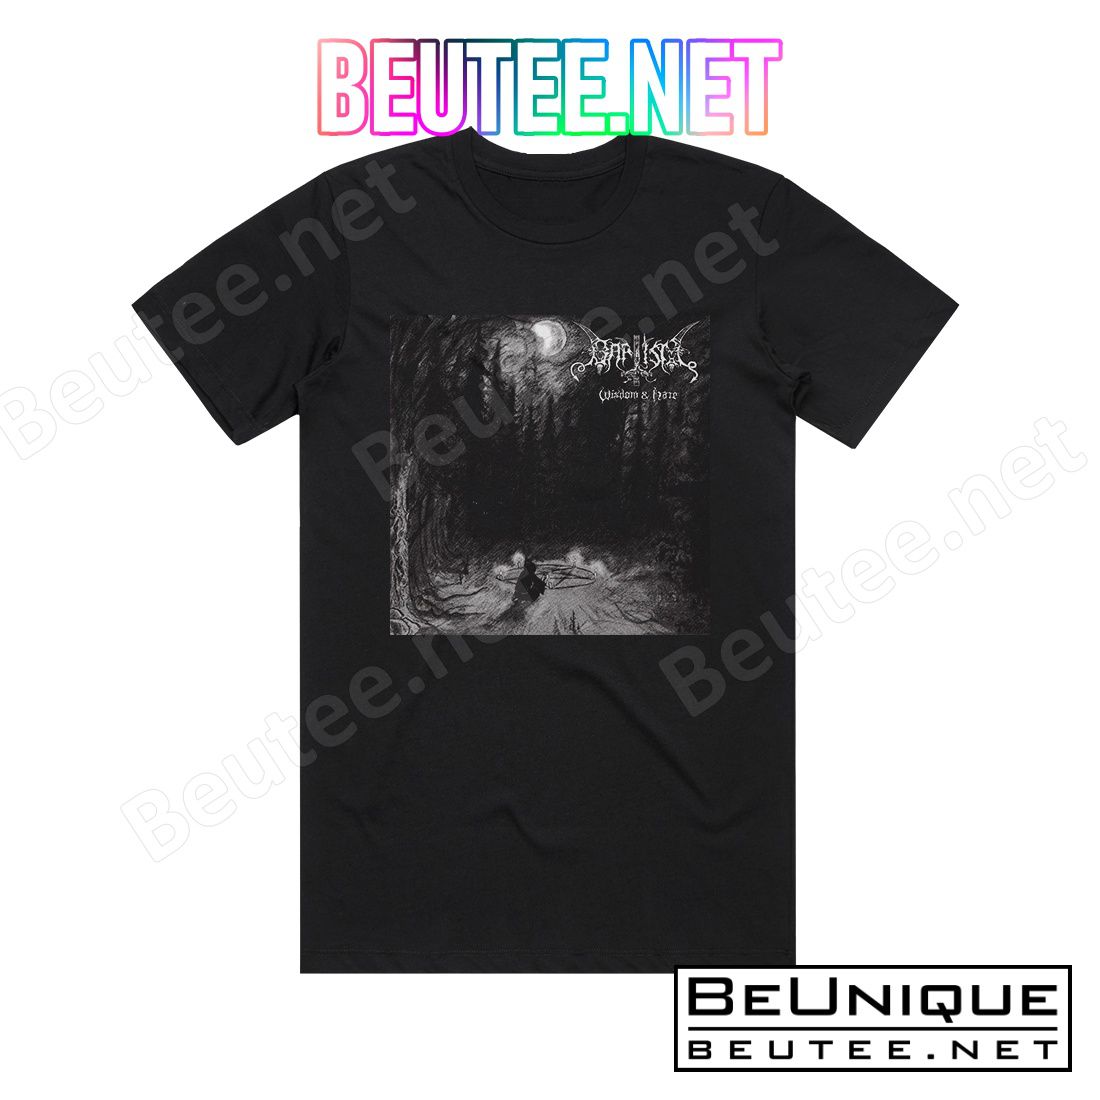 Baptism Wisdom Hate Album Cover T-Shirt